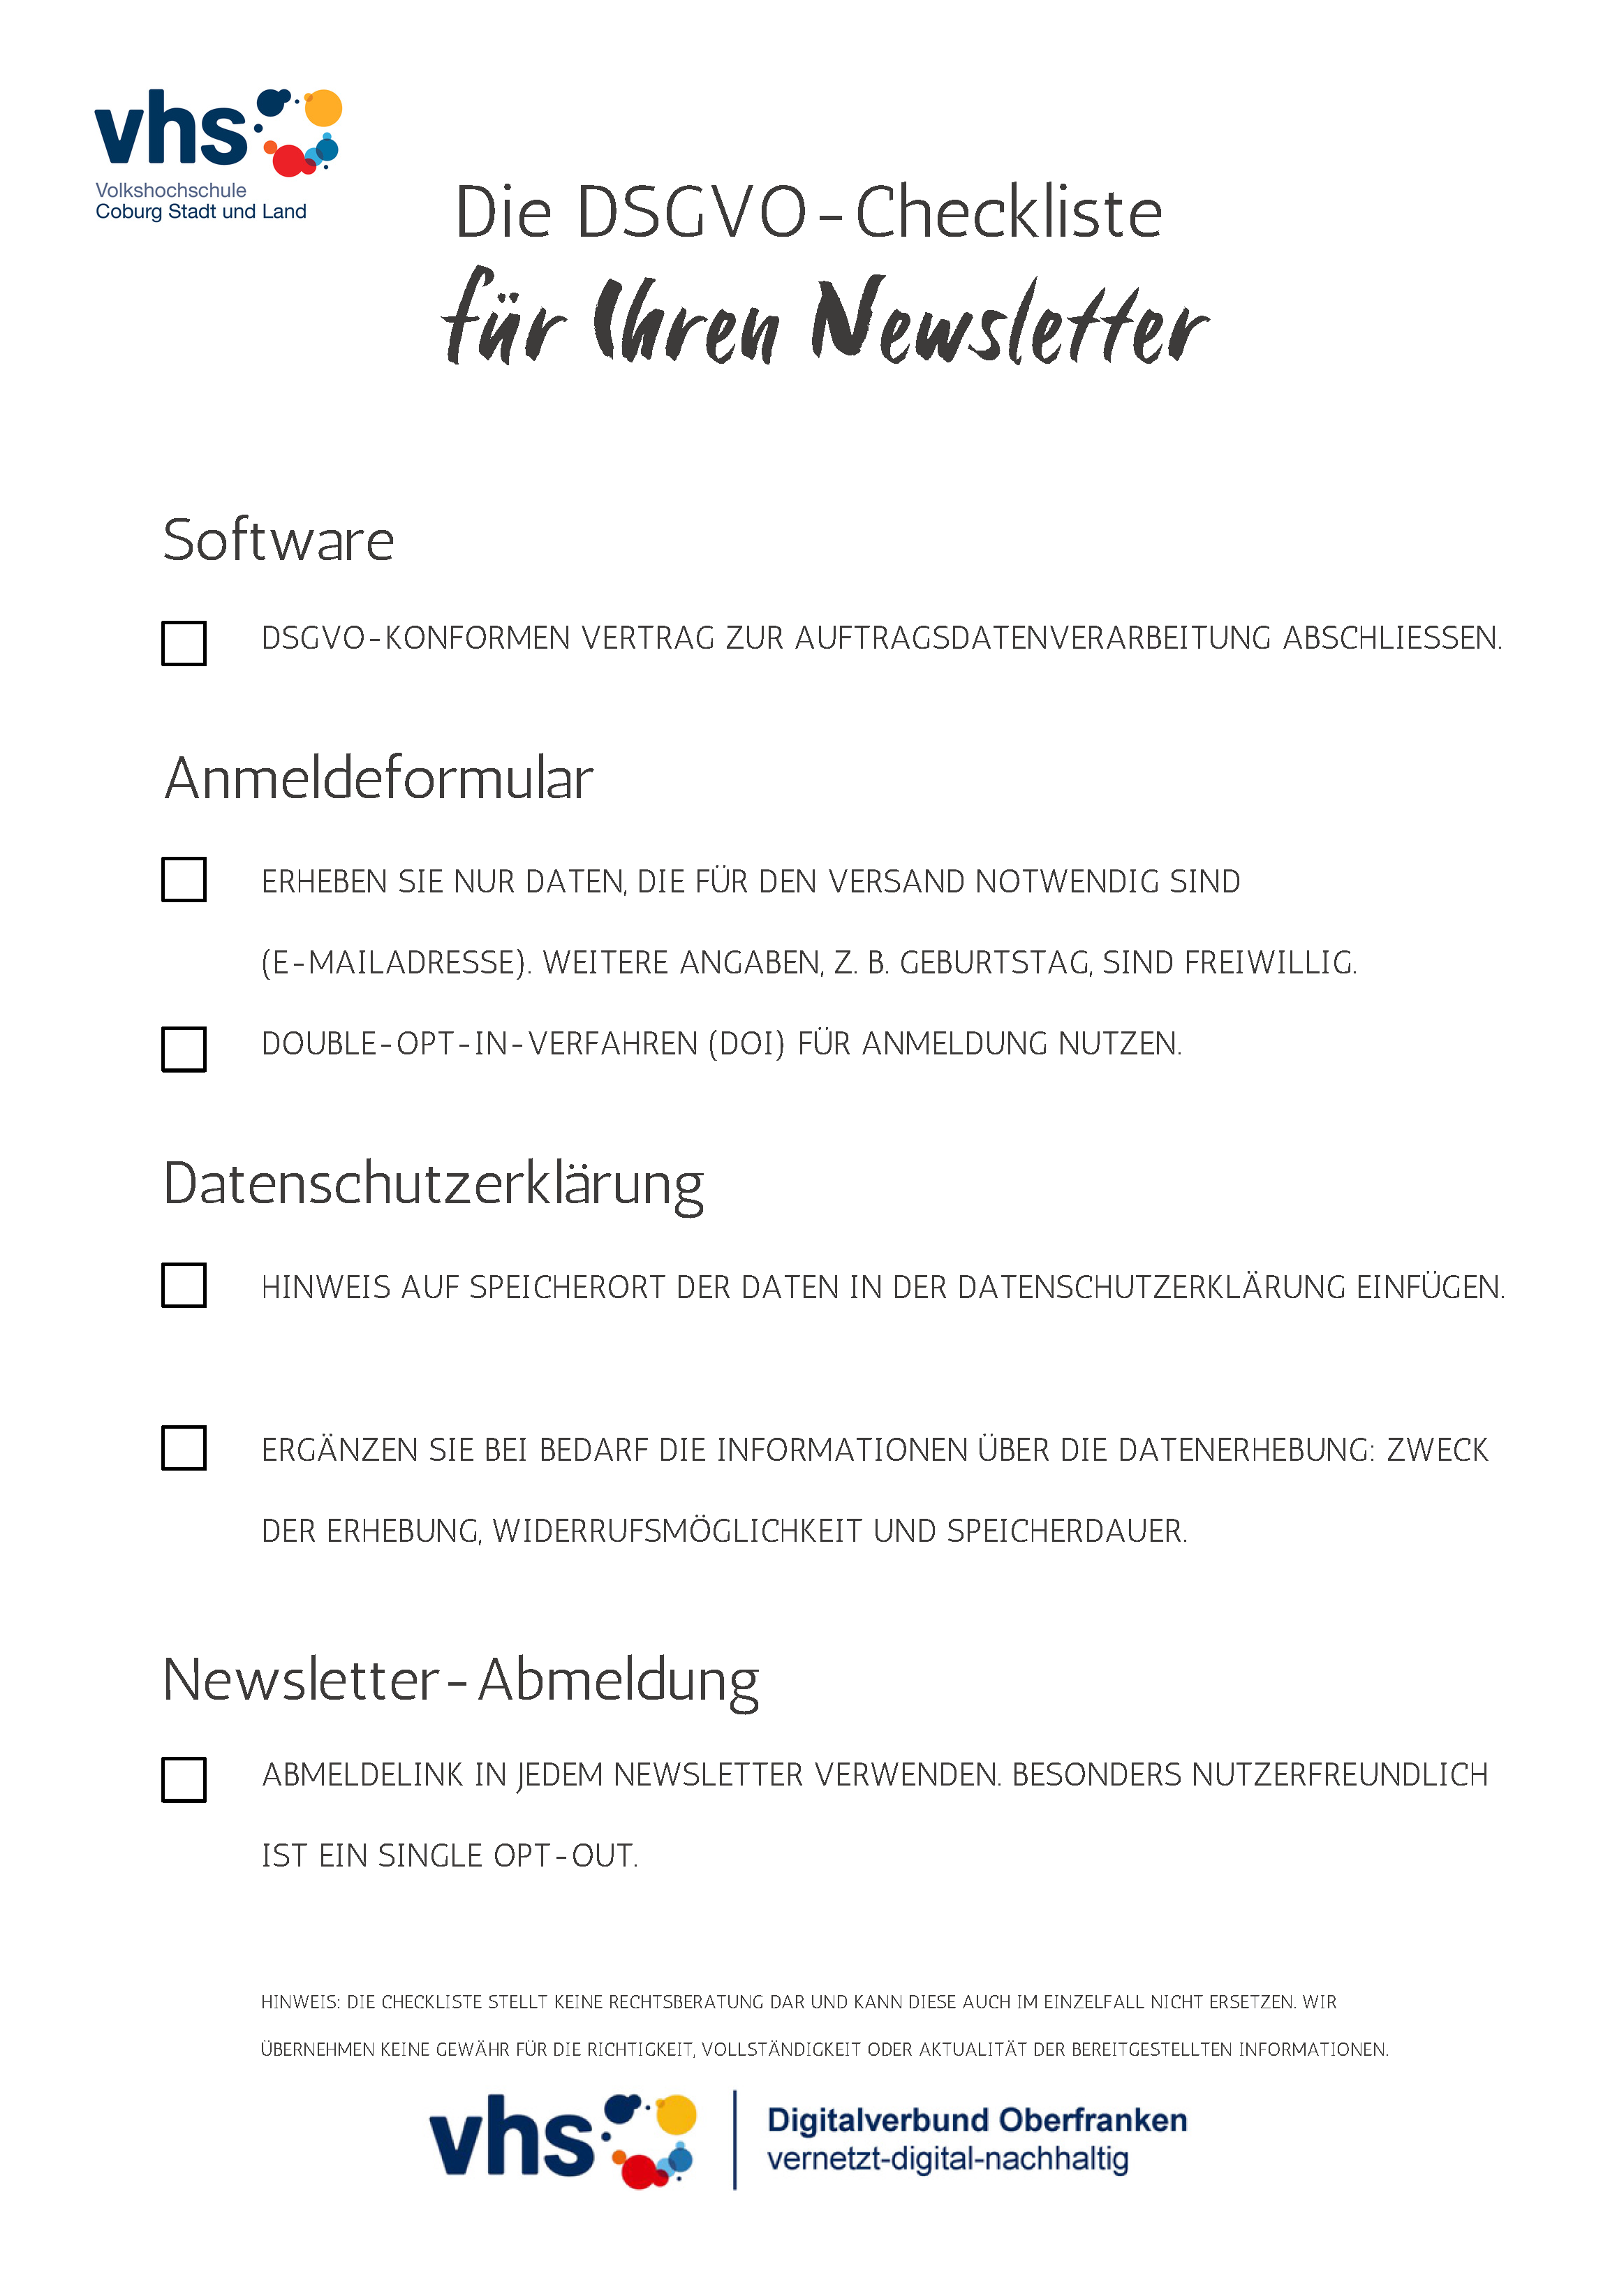 Deckblatt Marketing-Digithek: Checkliste Newsletter: DSGVO-Konformität